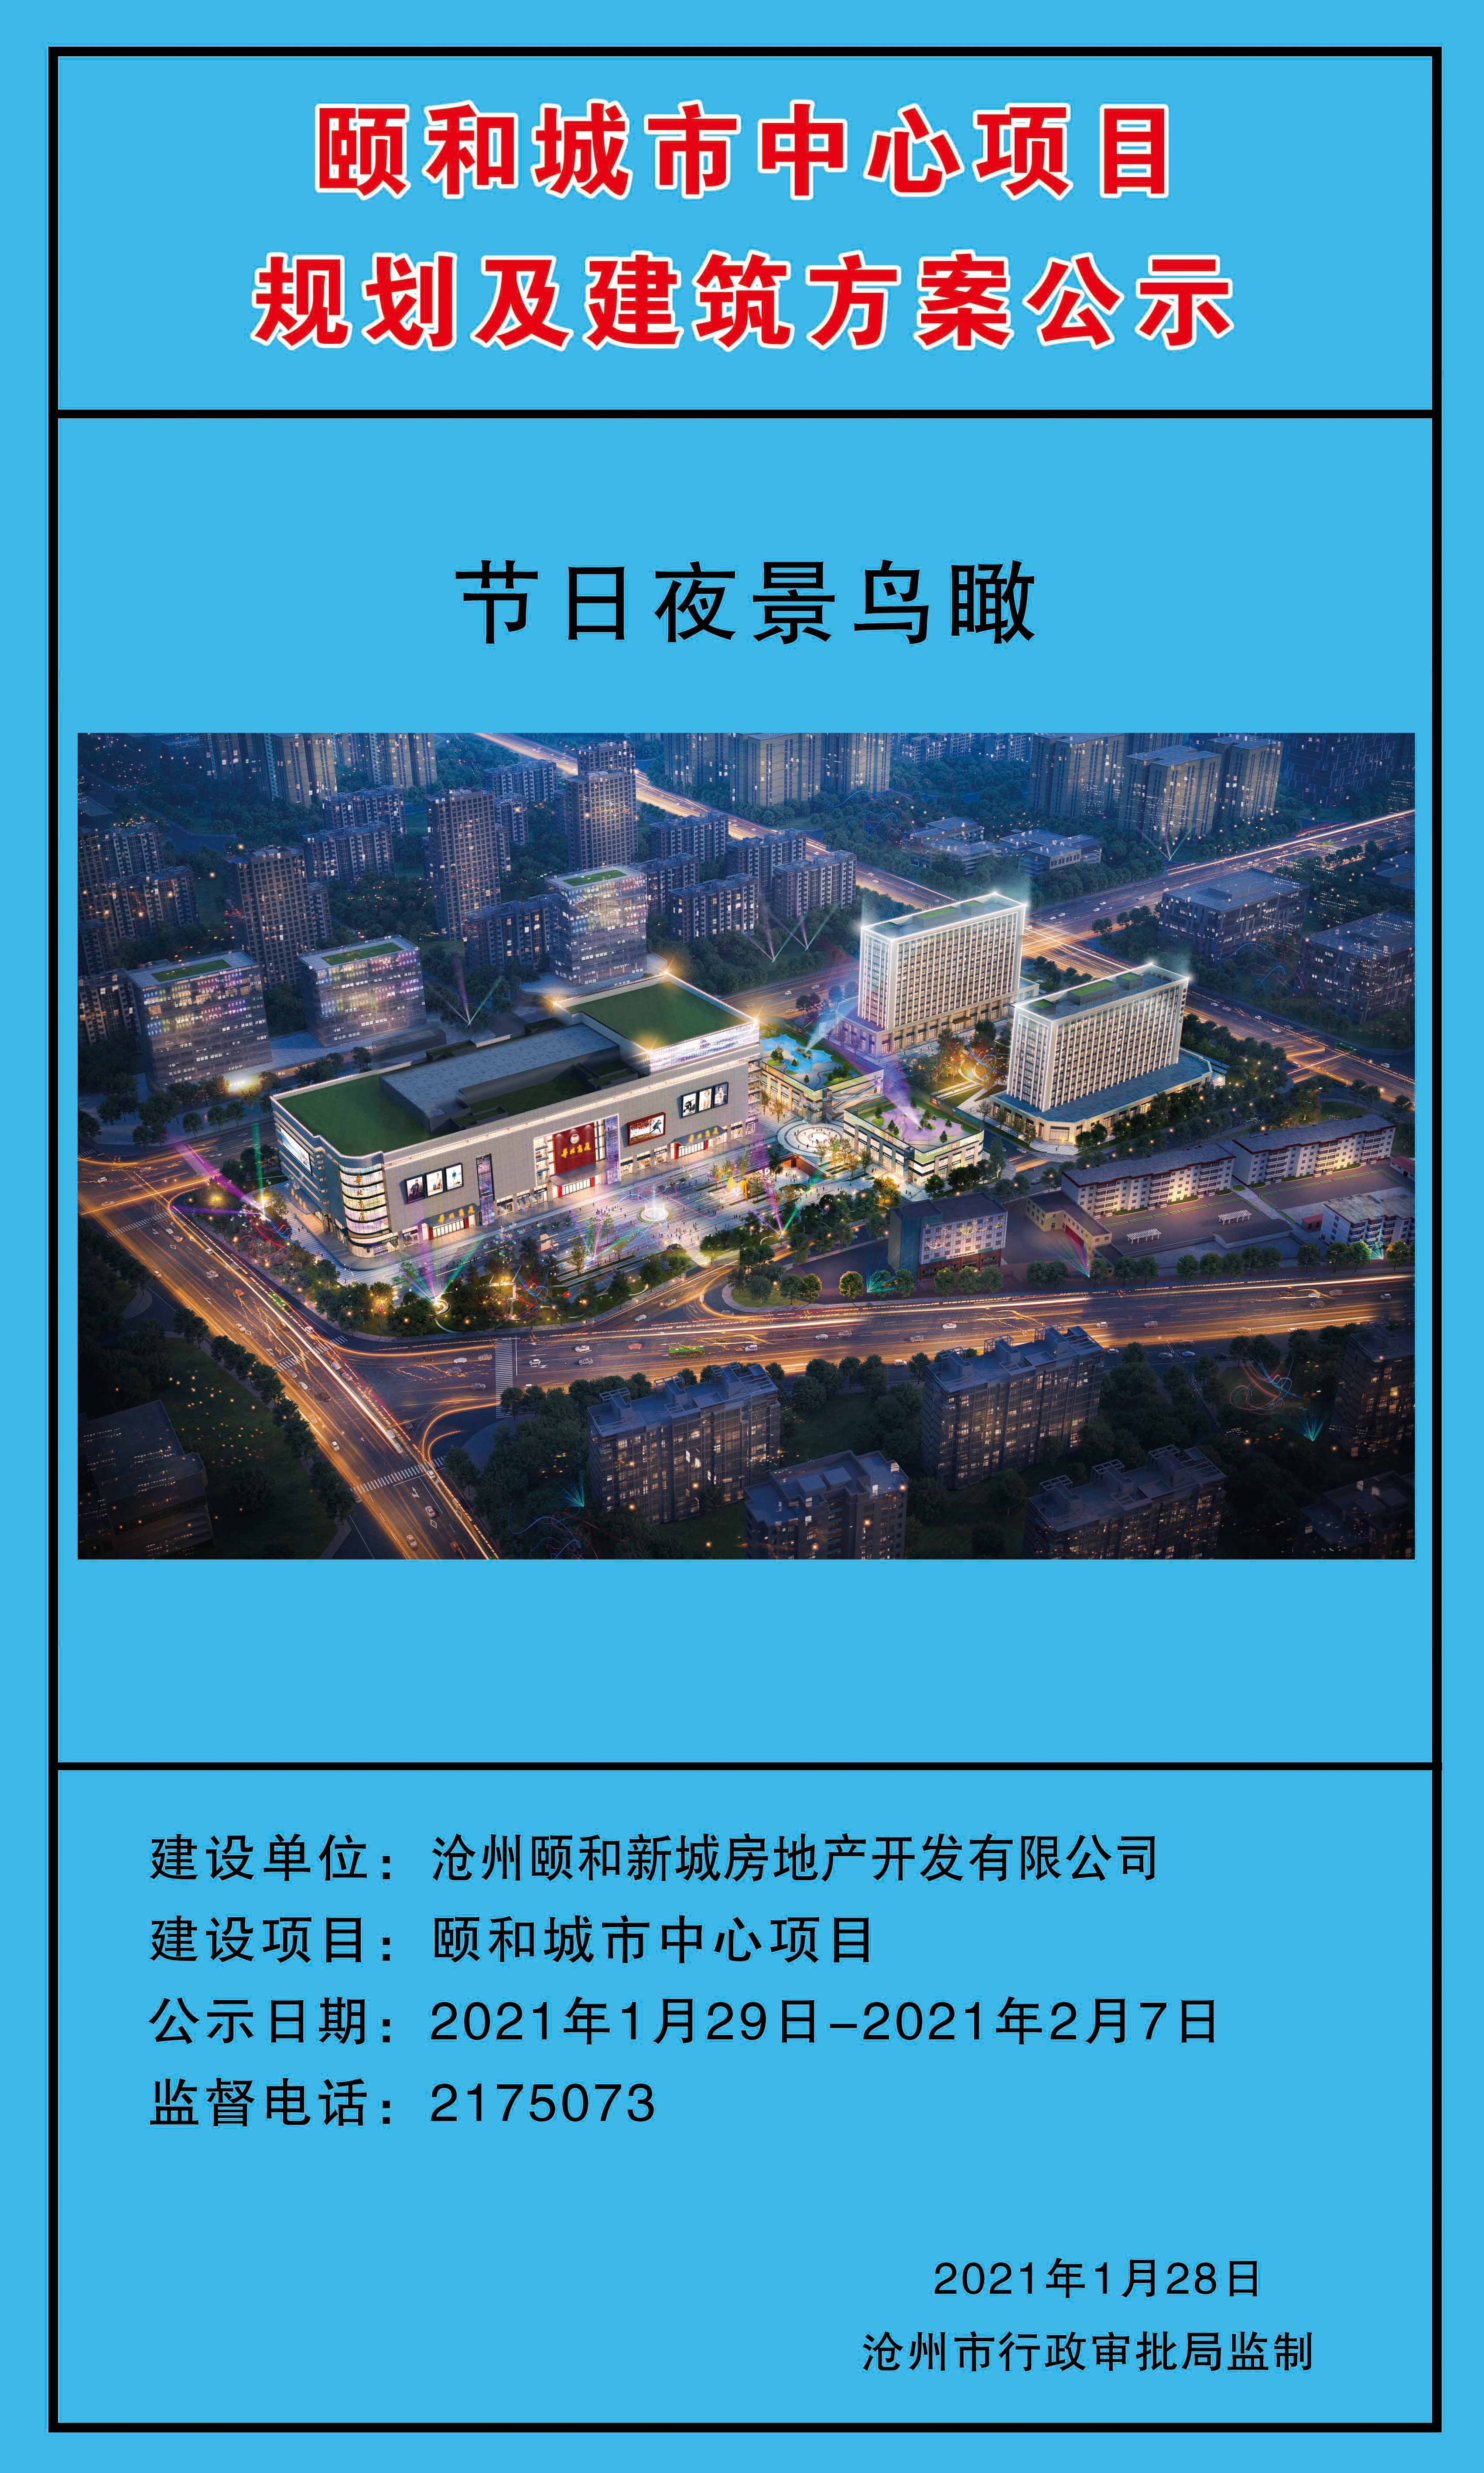 沧州颐和城市中心项目规划东部新城初见模样